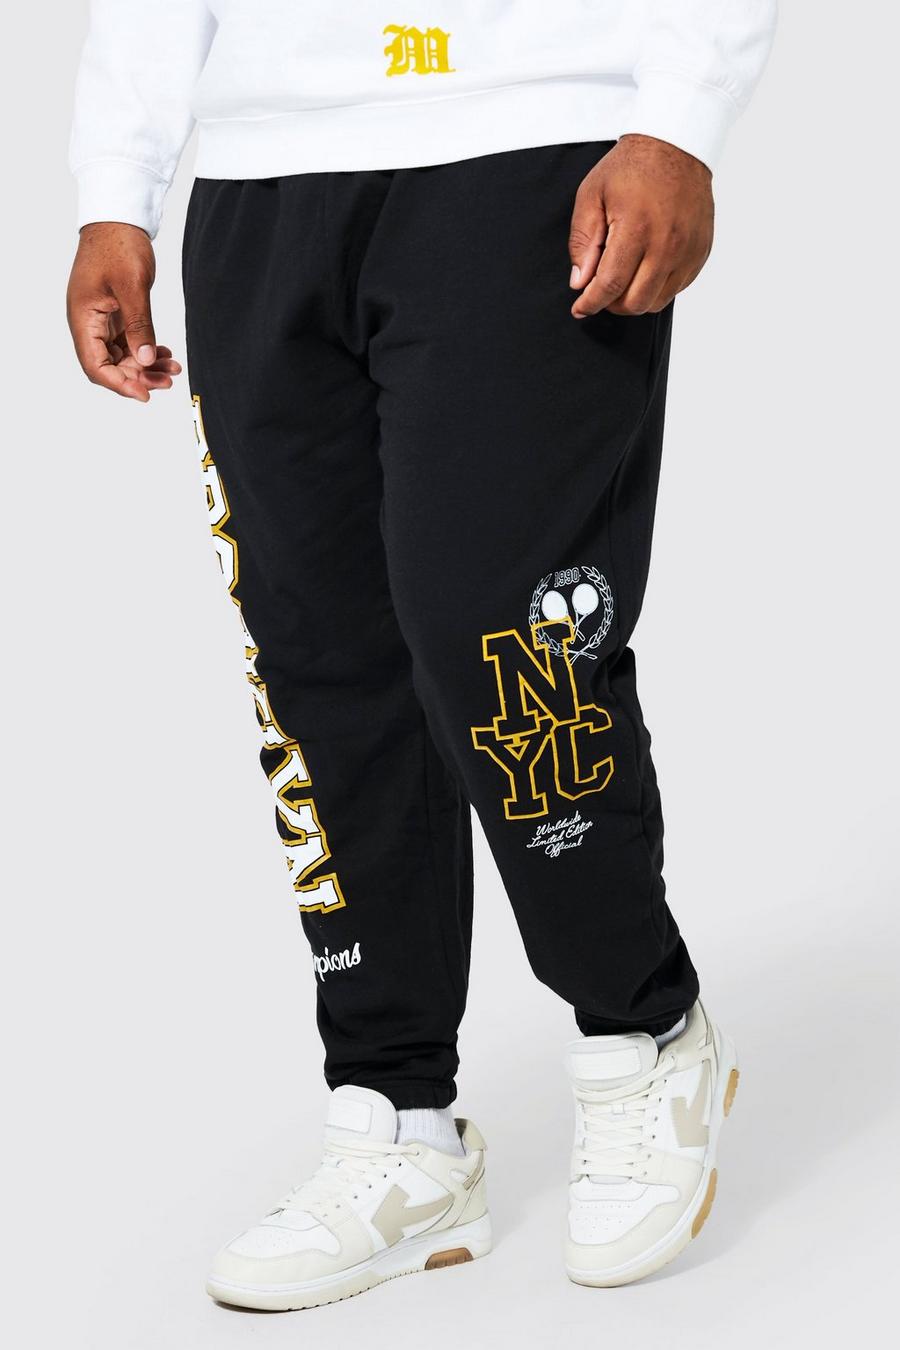 Pantalón deportivo Plus universitario con estampado Limited Edition Brooklyn, Black negro